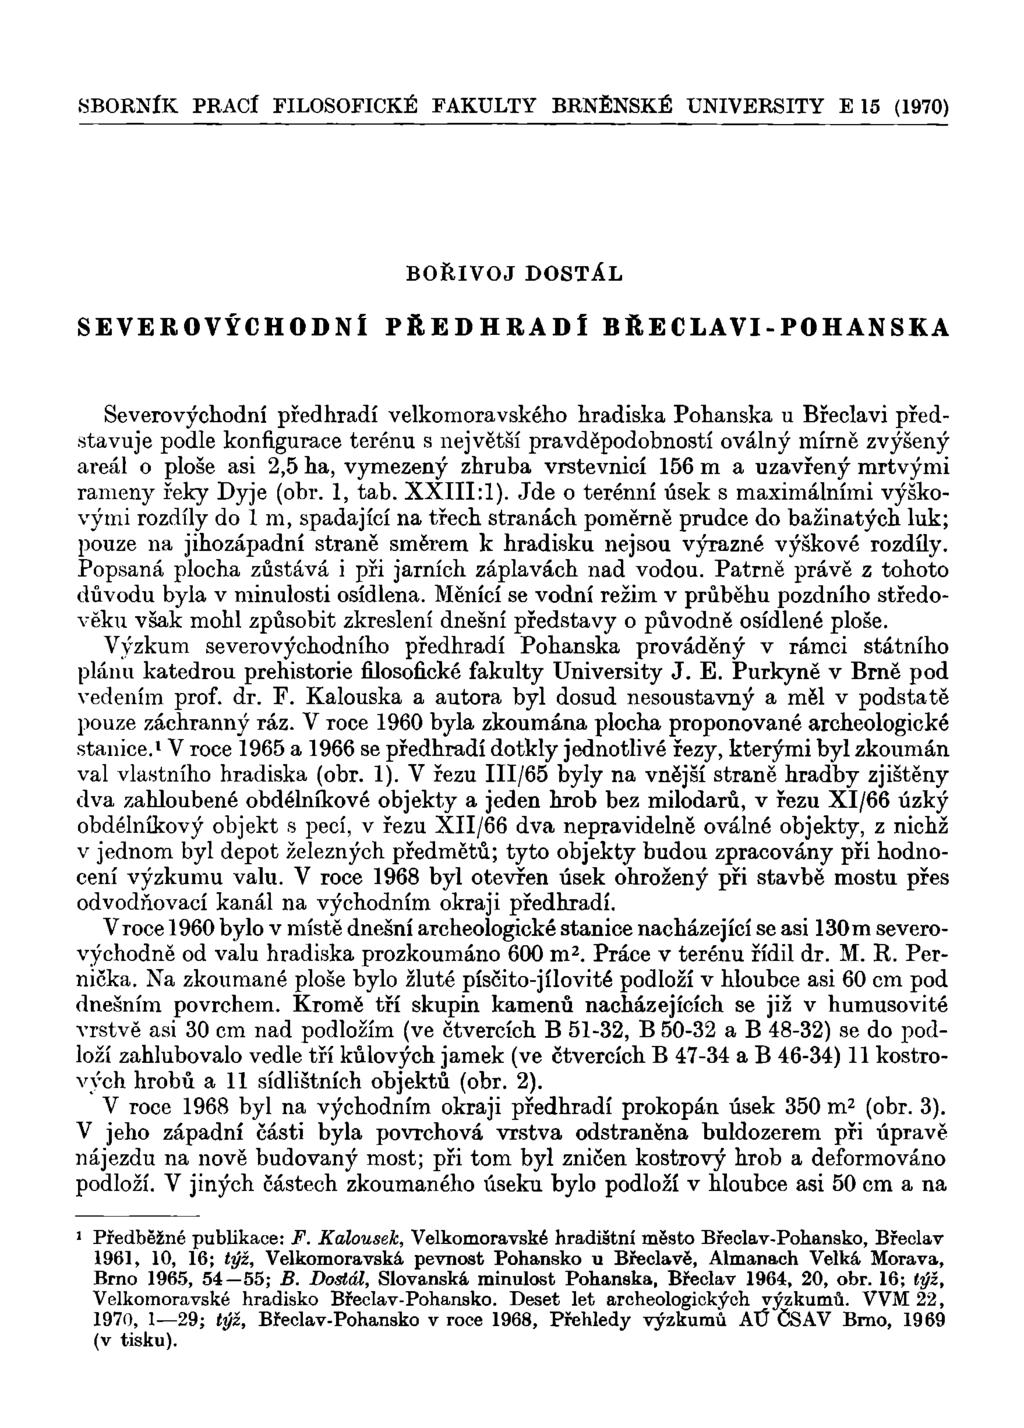 SBORNÍK PRACÍ FILOSOFICKÉ FAKULTY BRNĚNSKÉ UNIVERSITY E 15 (1970) BOŘIVOJ DOSTÁL SEVEROVÝCHODNÍ PŘEDHRADÍ BŘECLAVI-POHANSKÁ Severovýchodní předhradí velkomoravského hradiska Pohanská u Břeclavi